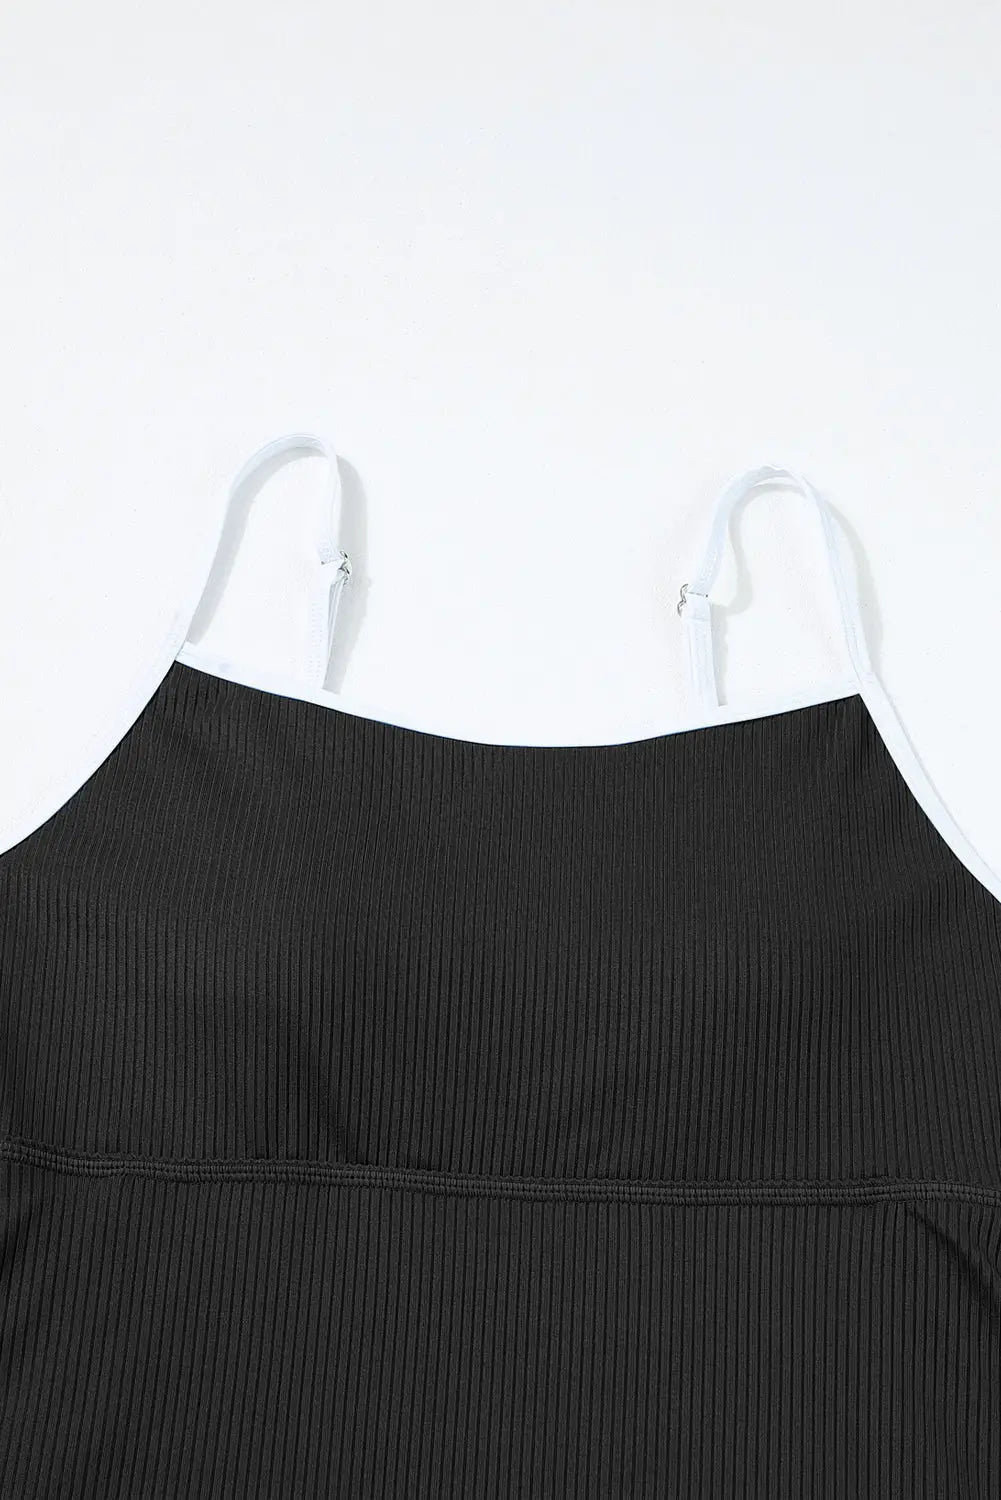 Black sporty one piece swim dress - dresses